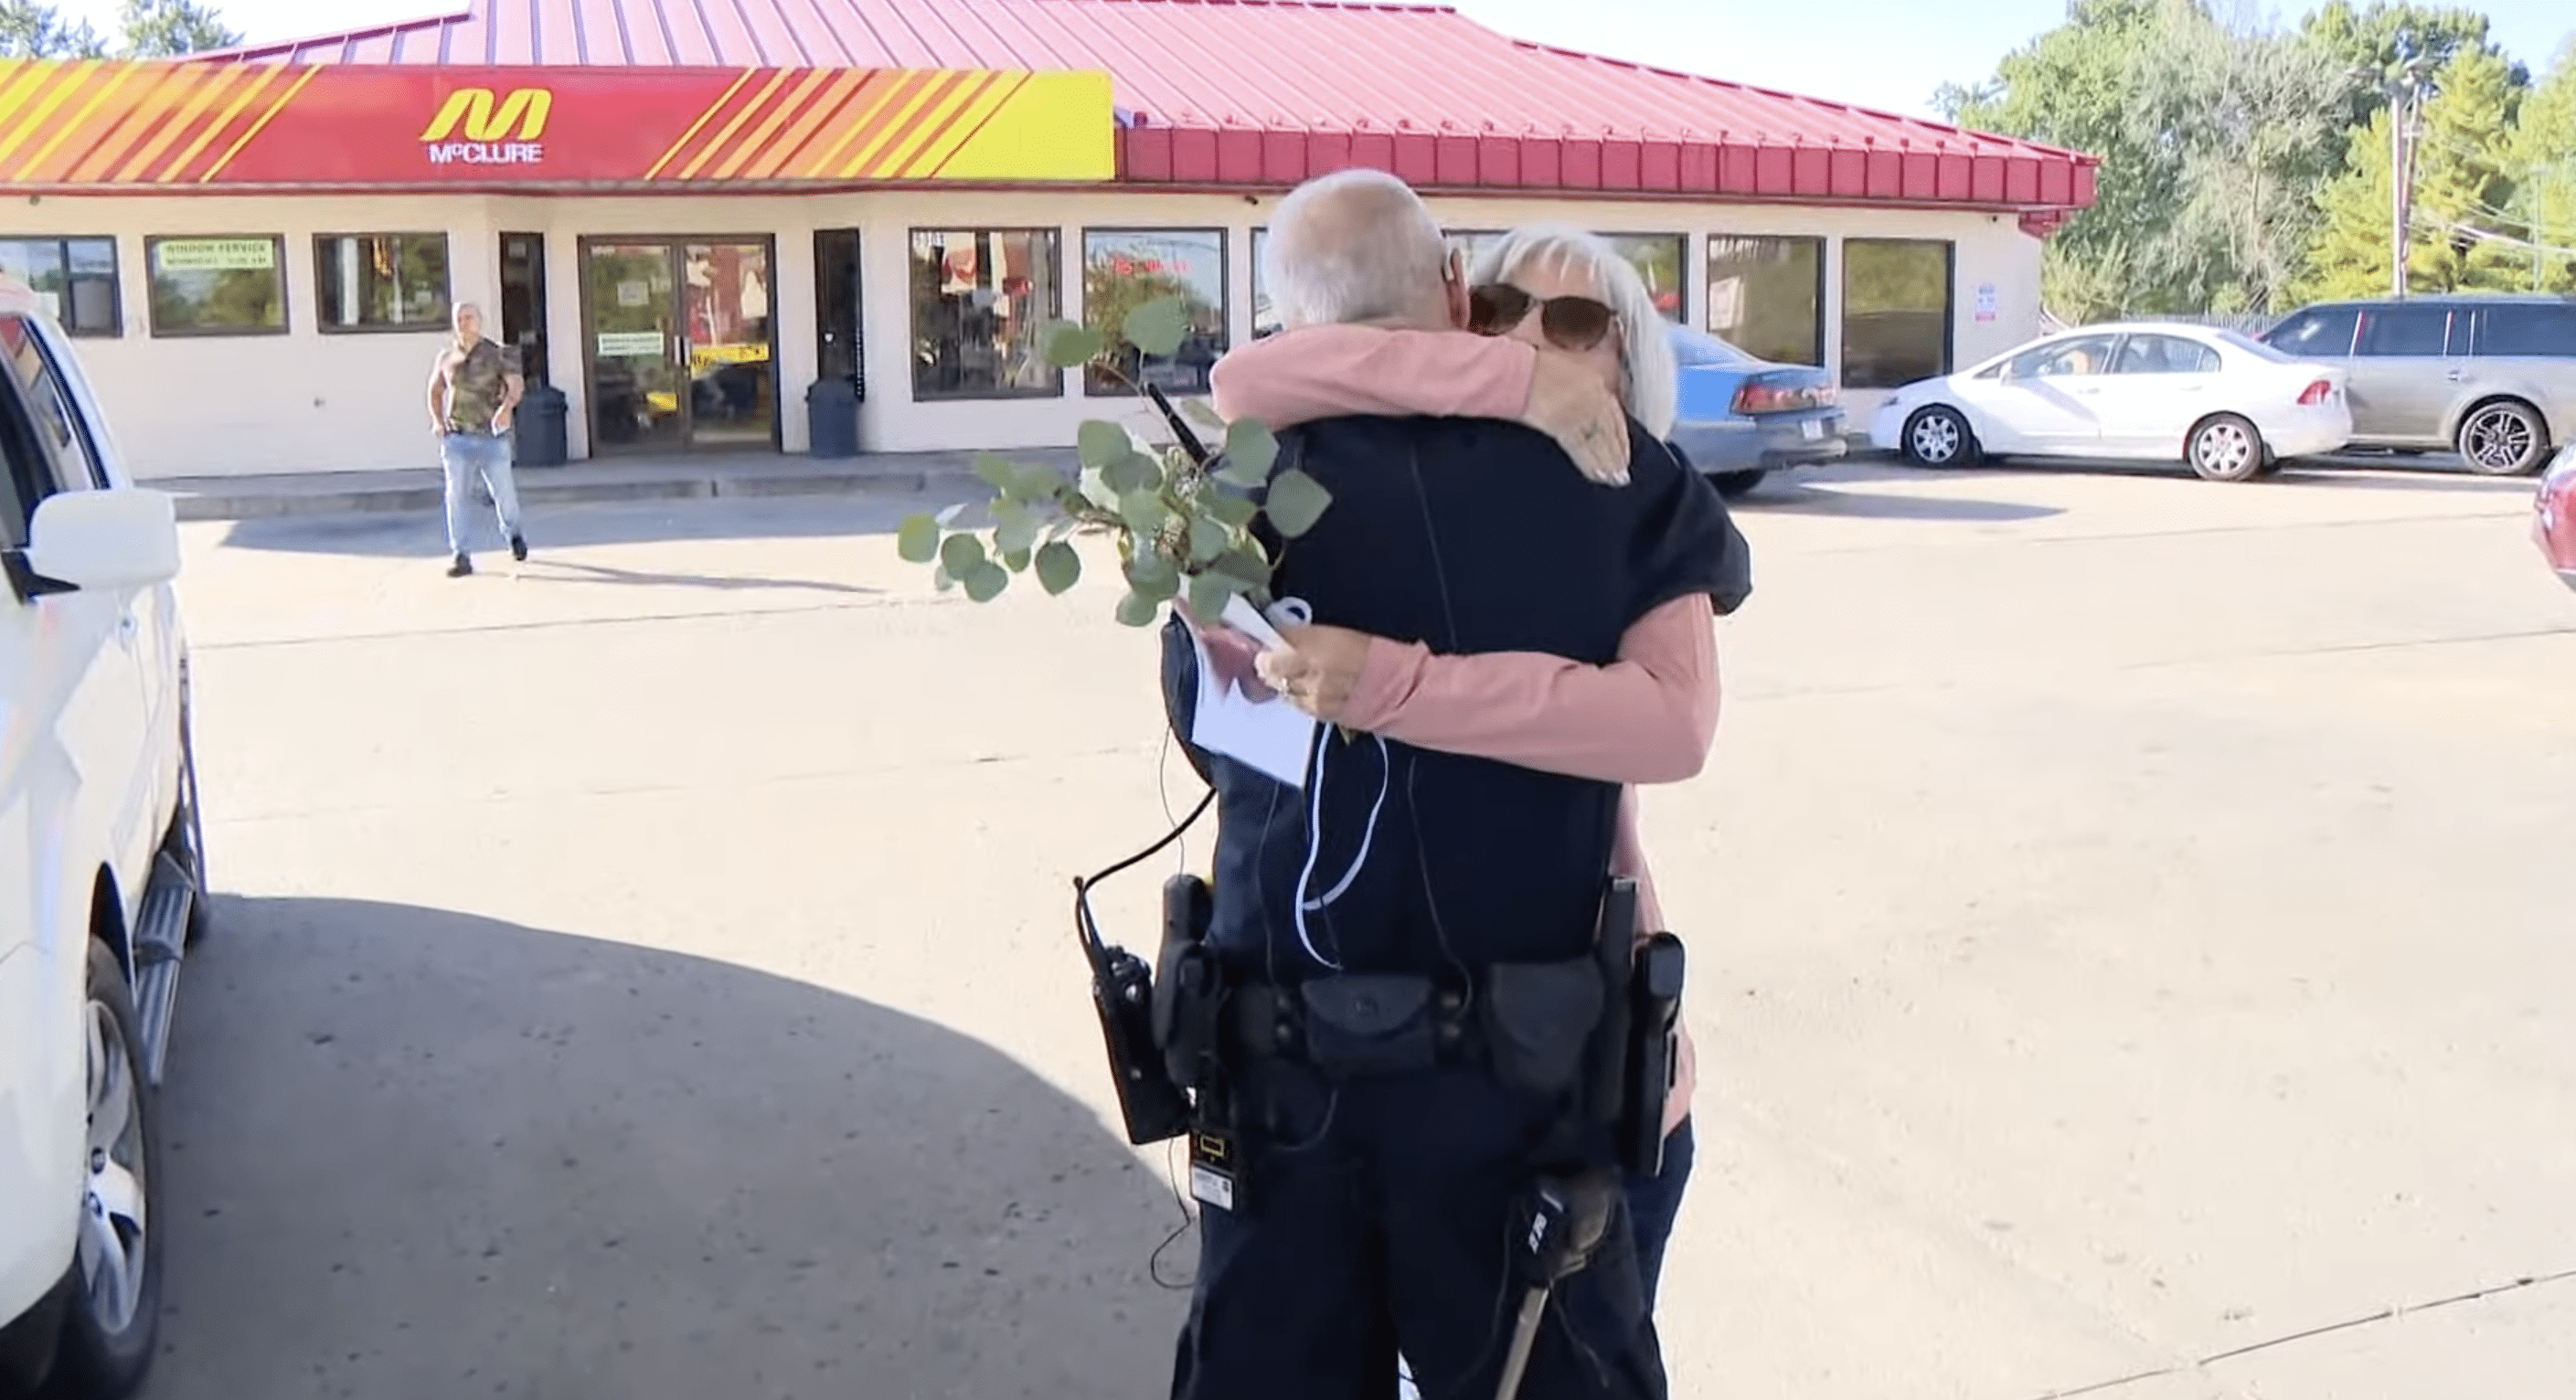 Shelbys Mutter umarmt Officer Stagg und dankt ihm für seine unglaubliche Arbeit. | Quelle: YouTube.com/WTHR